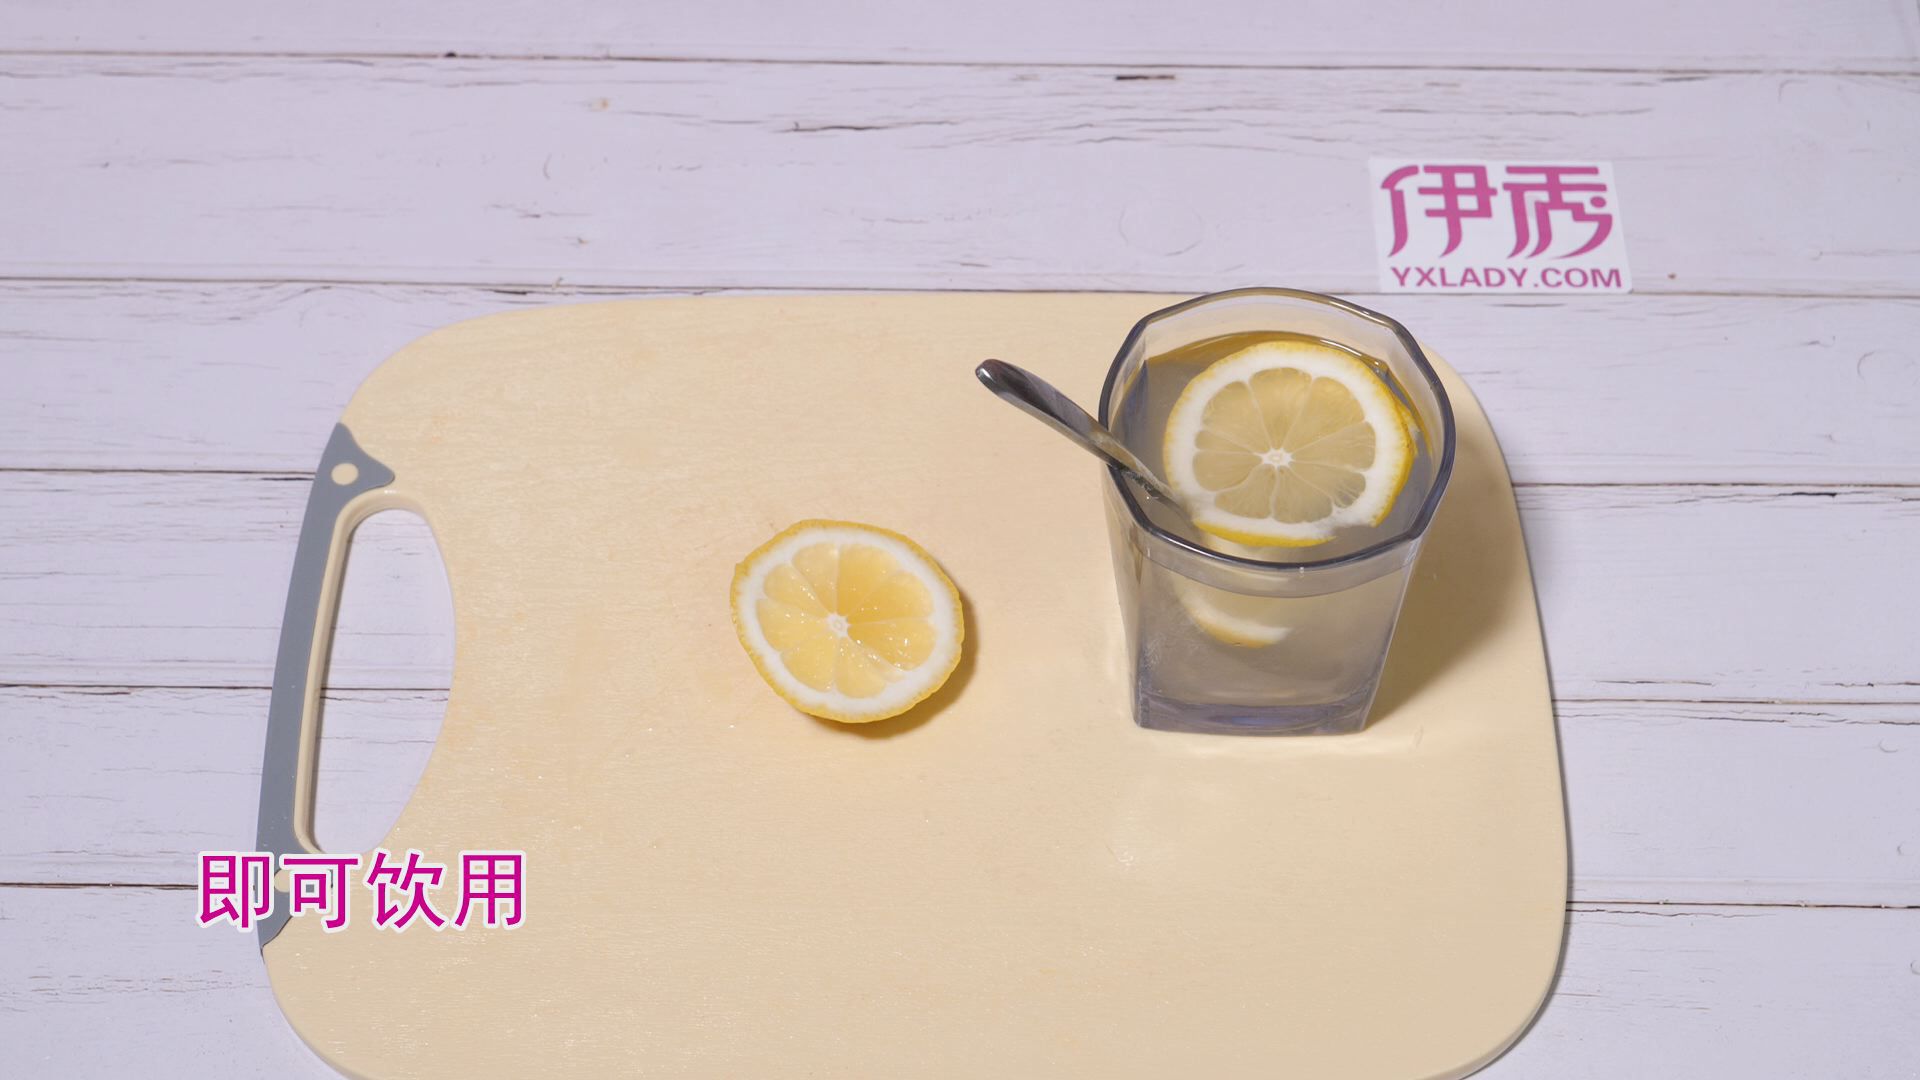 喝柠檬水会被晒黑吗 原因是什么呢